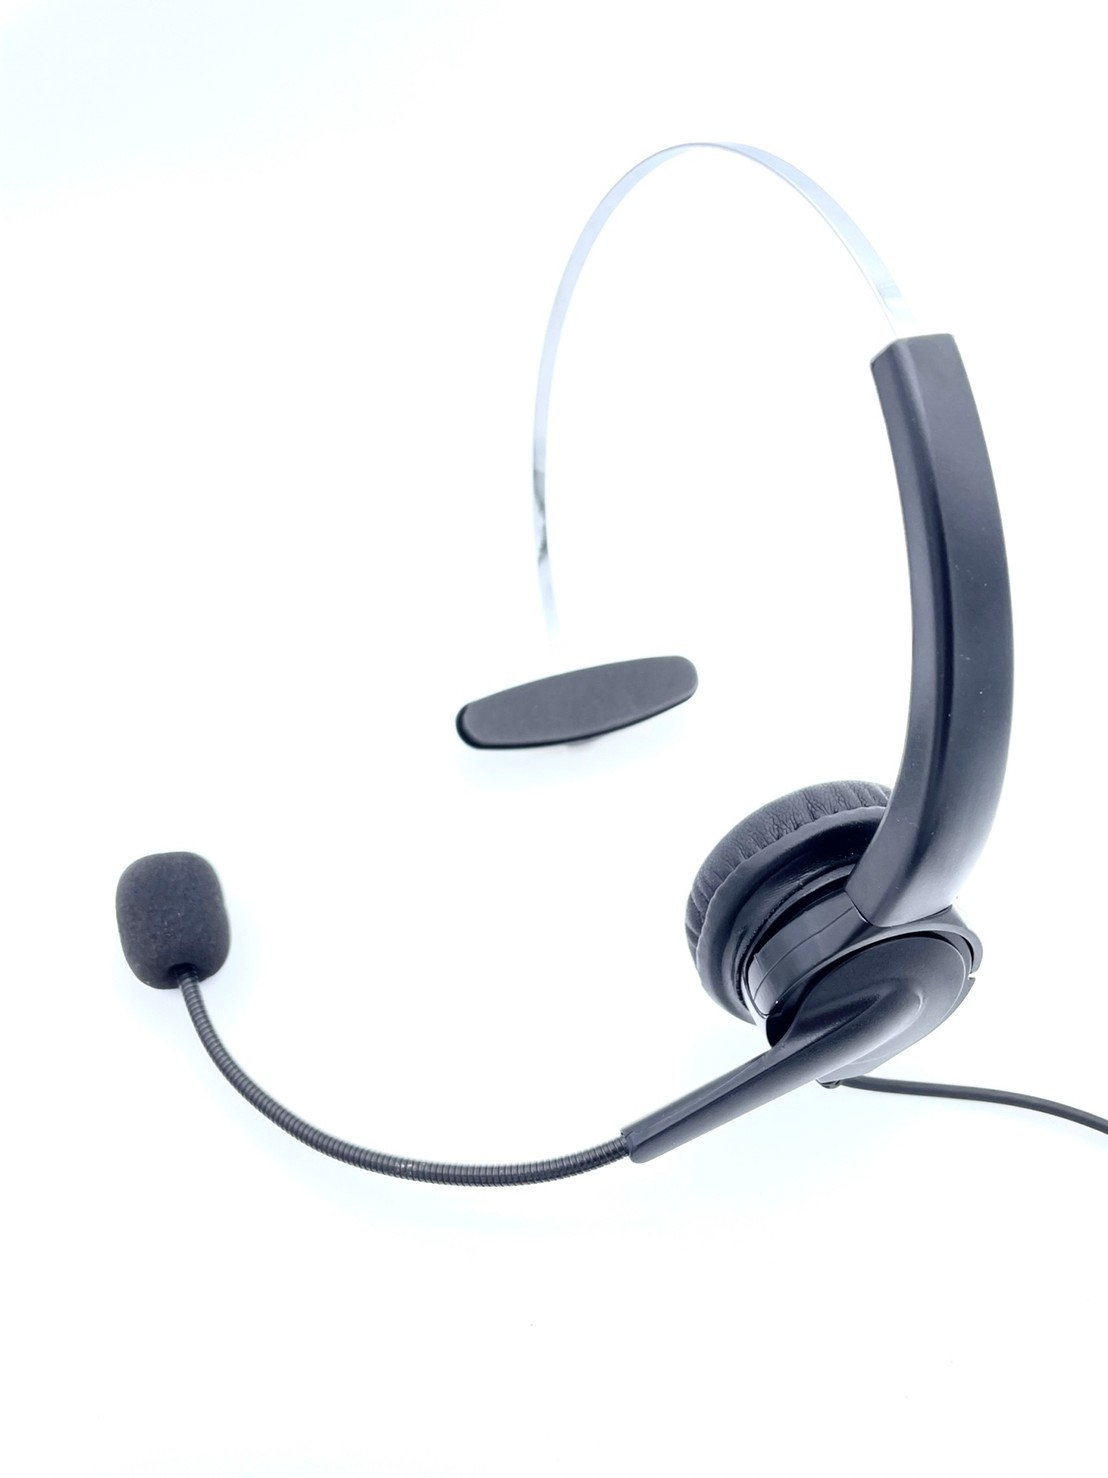 傳康電話專用 傳康電話耳機麥克風 TRANSTEL DK6-12DH DK6-8 DK6-36D 客服頭戴式耳機 專用電話耳機推薦